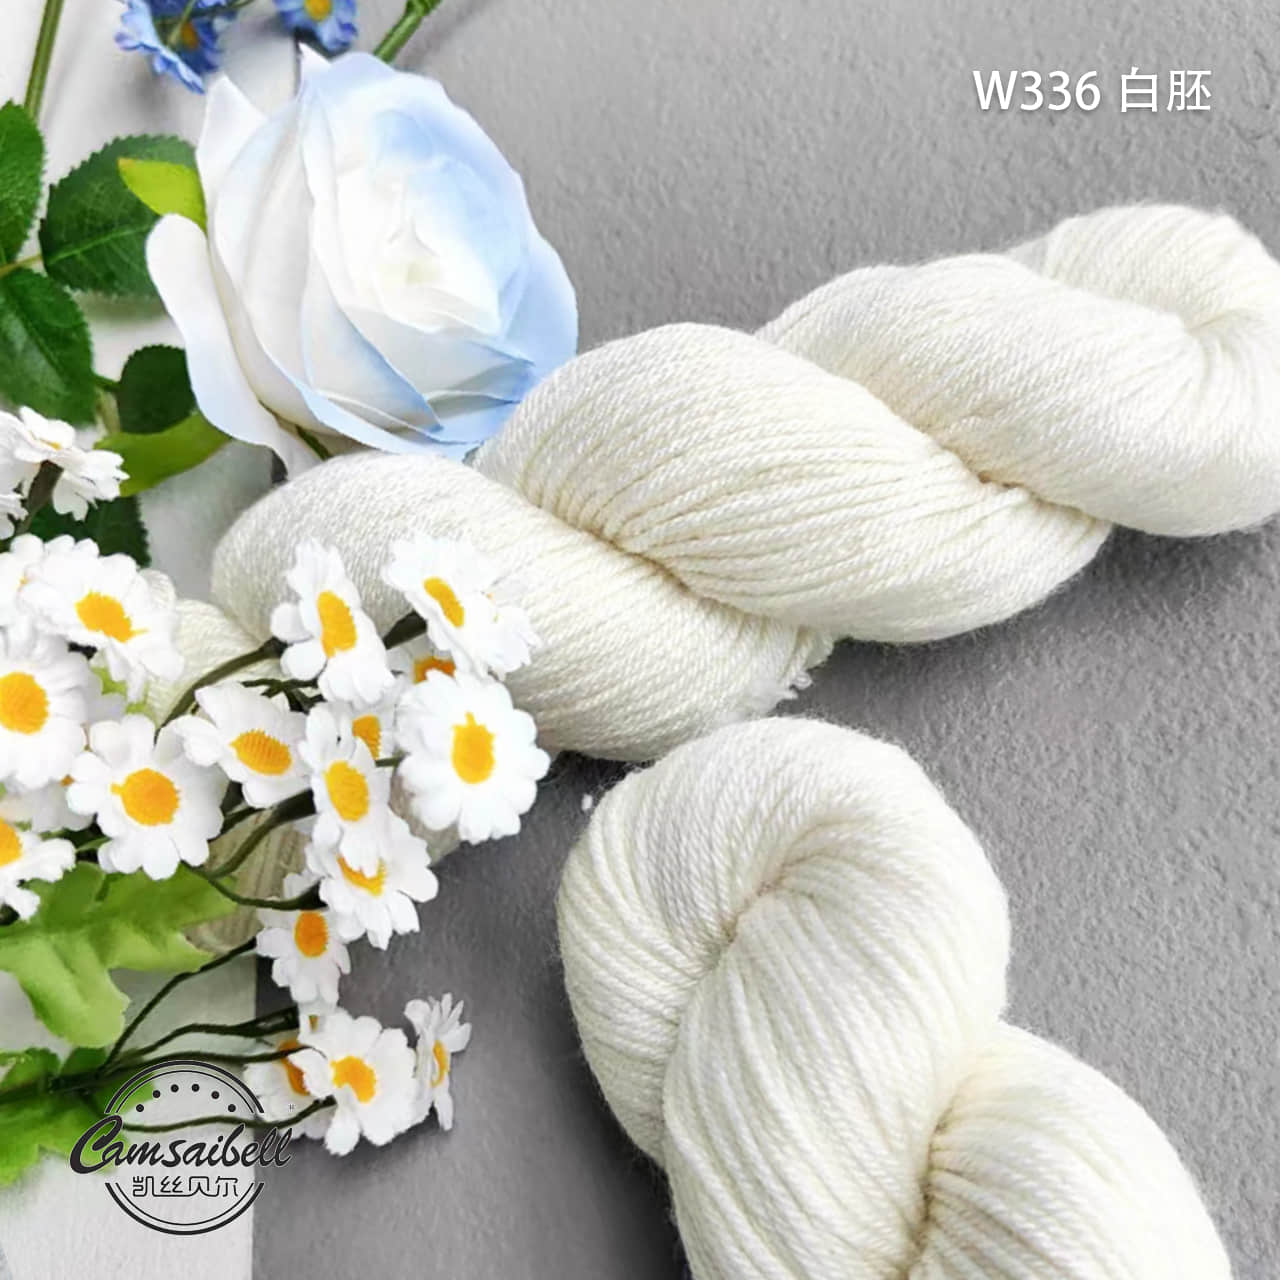 DK knitting yarn W336 215m/100g.